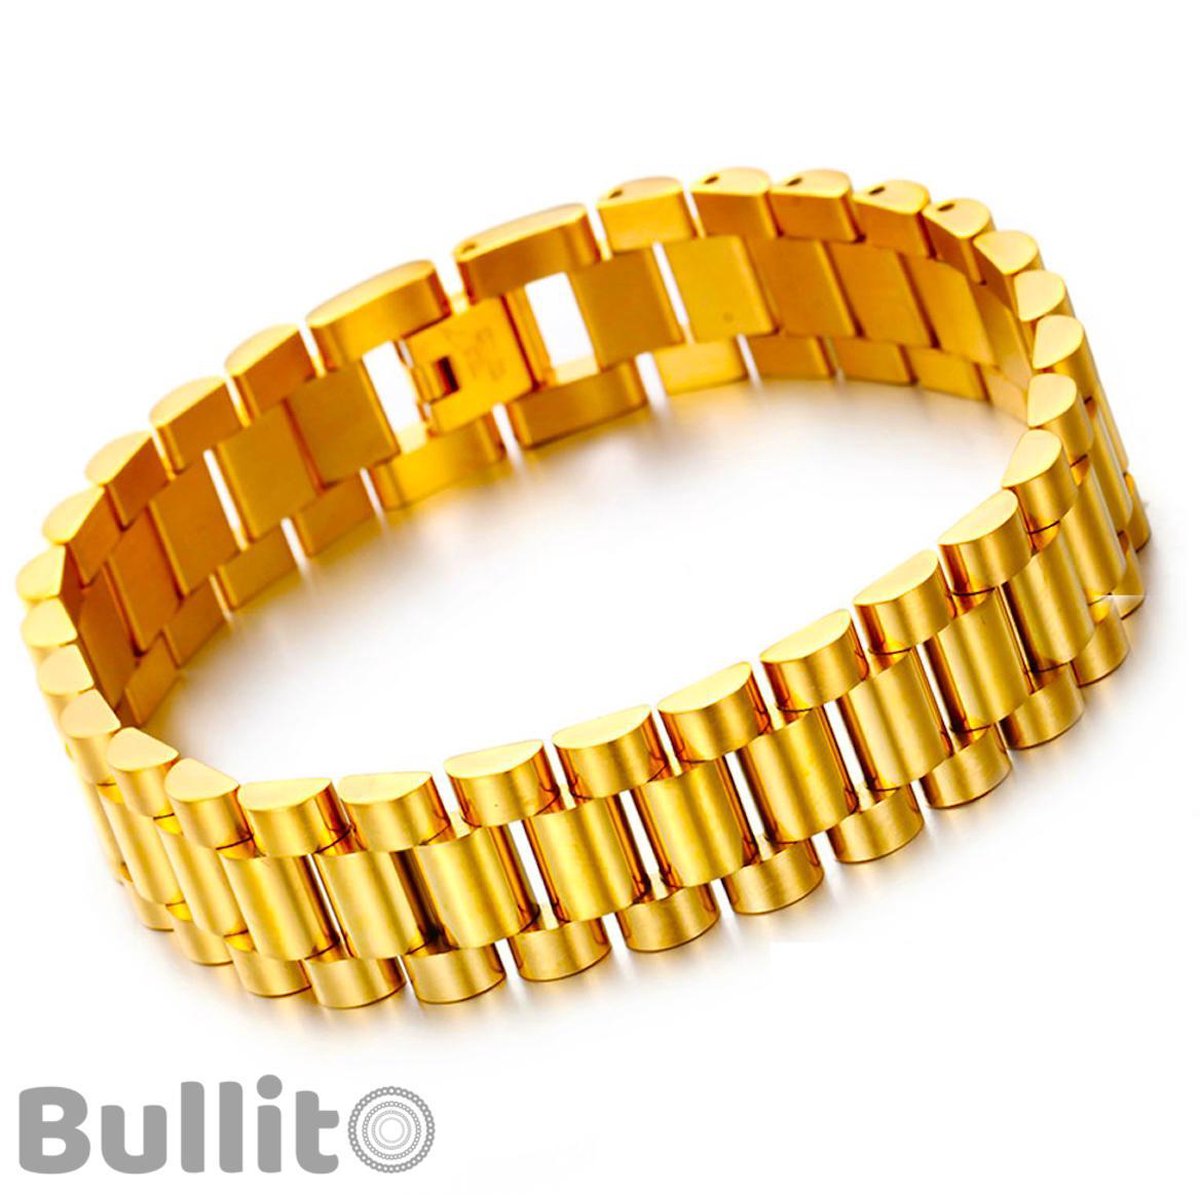 Presidento" Gouden Armband - Gold Plated - 70 GRAM - 16 x 3,5mm - 23cm - Heren -... |